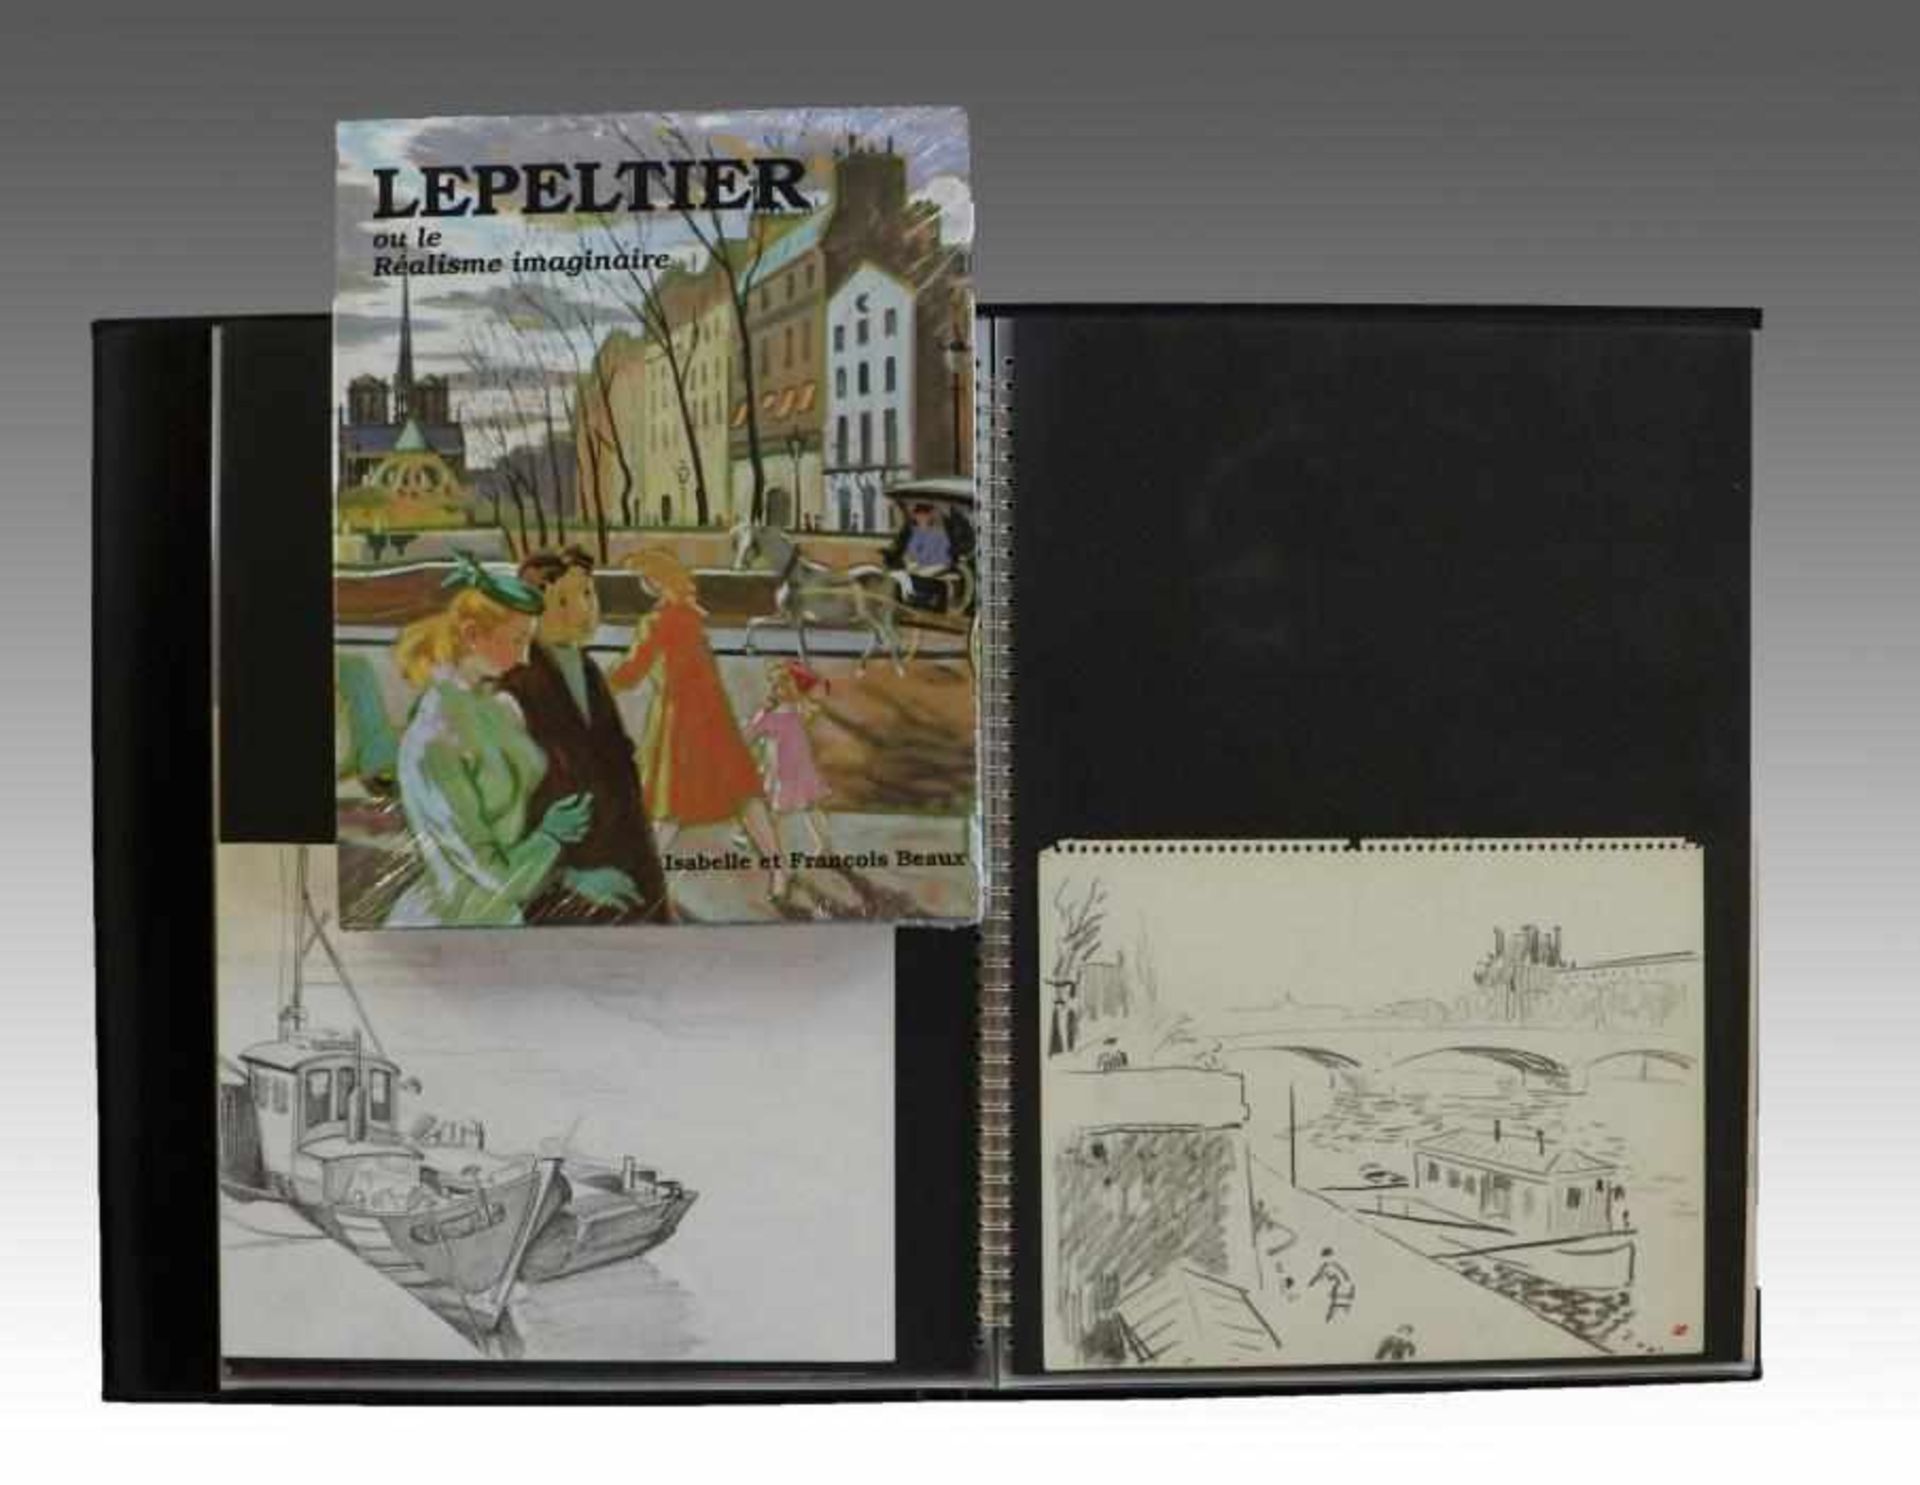 Lepeltier, Robert1913 Paris - 1996, Mappe m. 31 Zeichnungen/Mischtechniken/Lithos., Bleistift, - Bild 2 aus 6